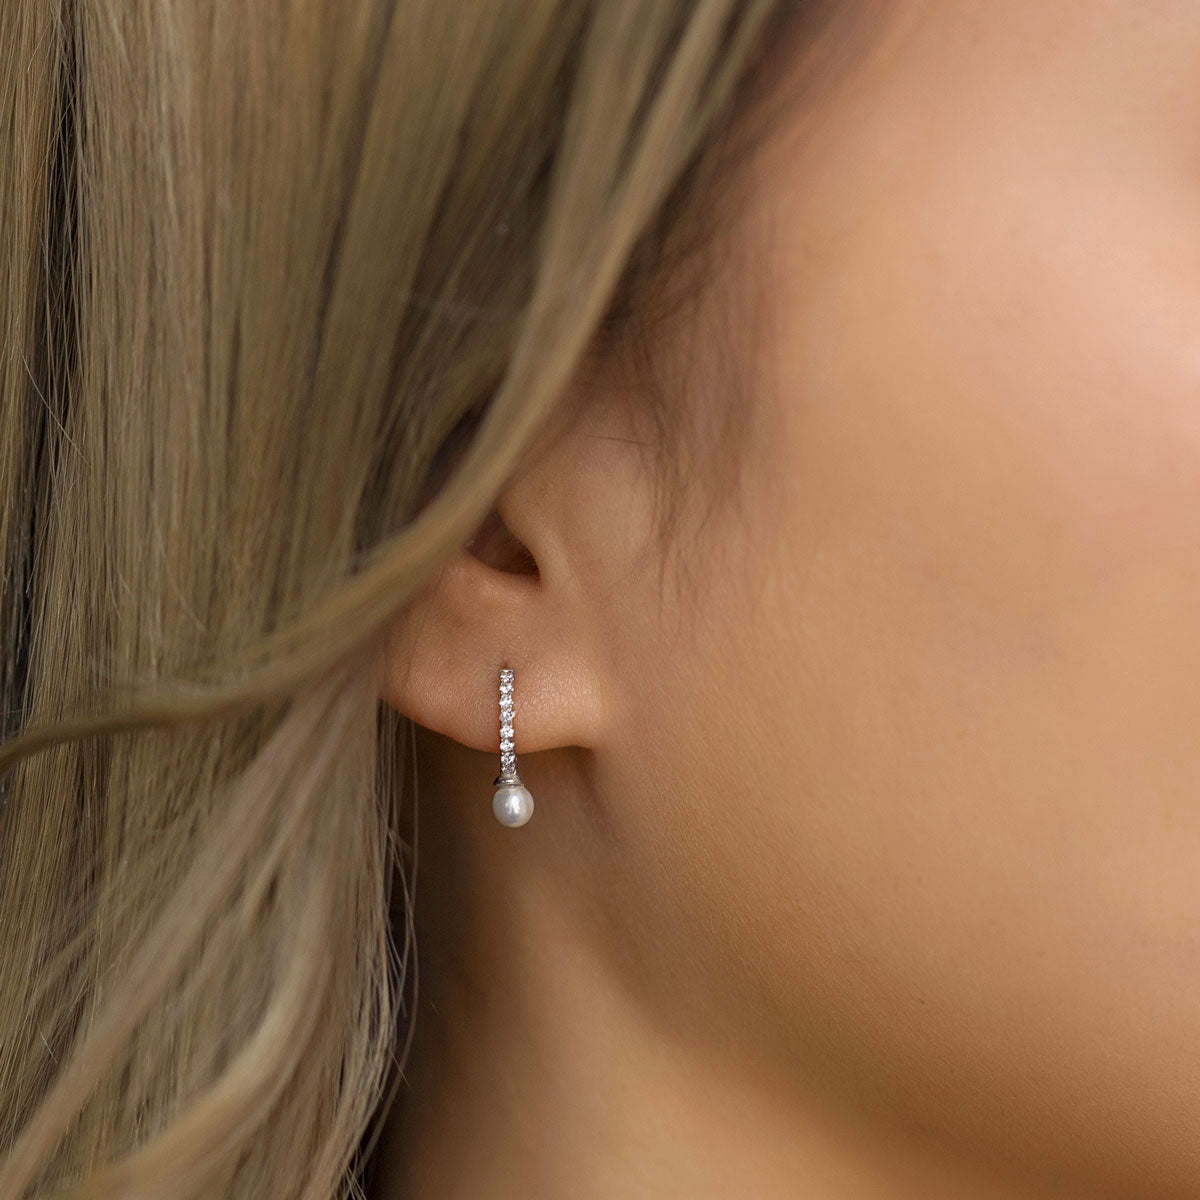 Silver Pearl Huggie earrings worn on ear